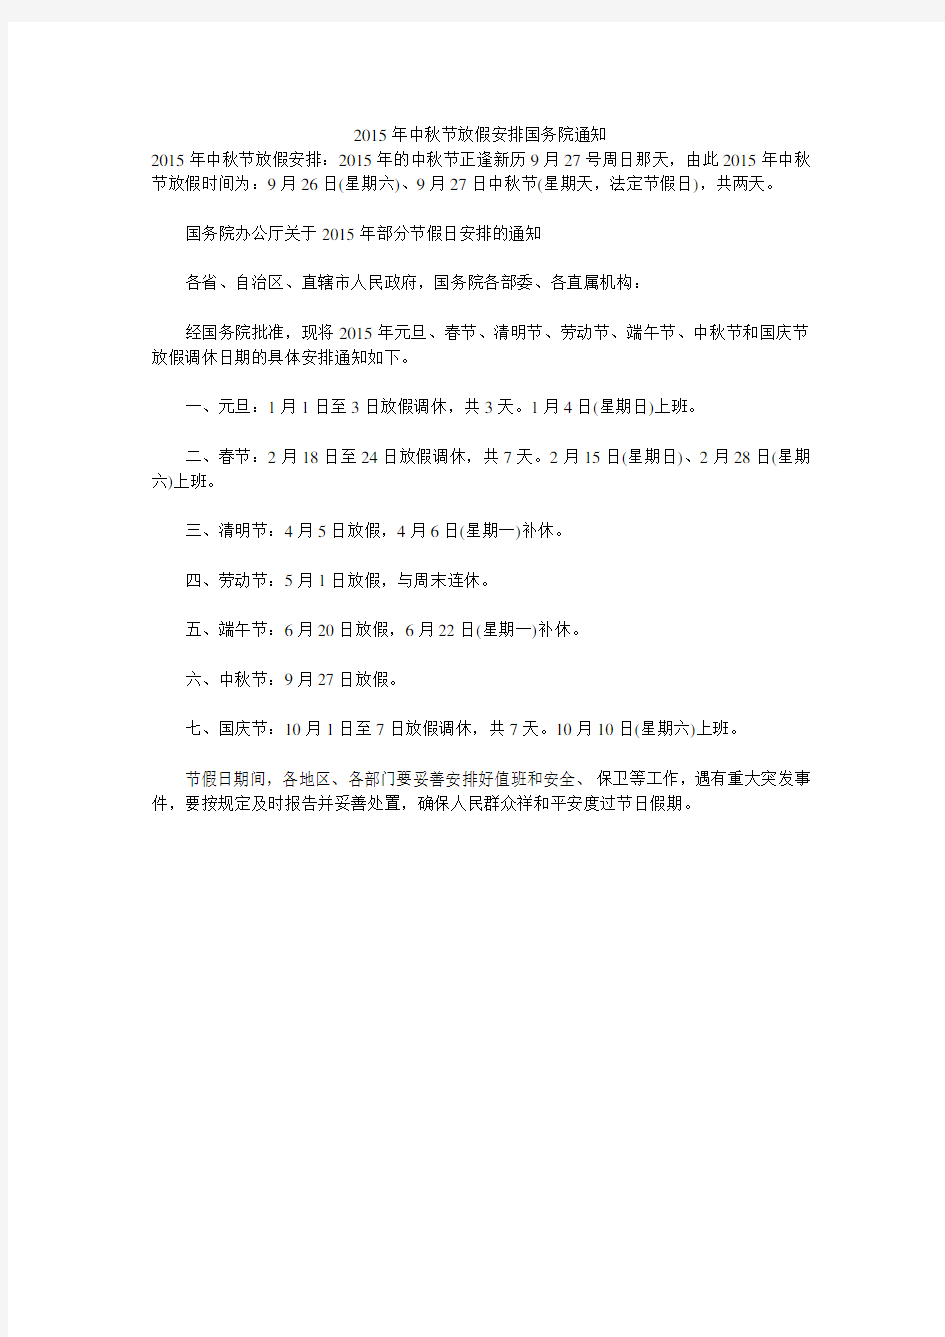 2015年中秋节放假安排国务院通知 